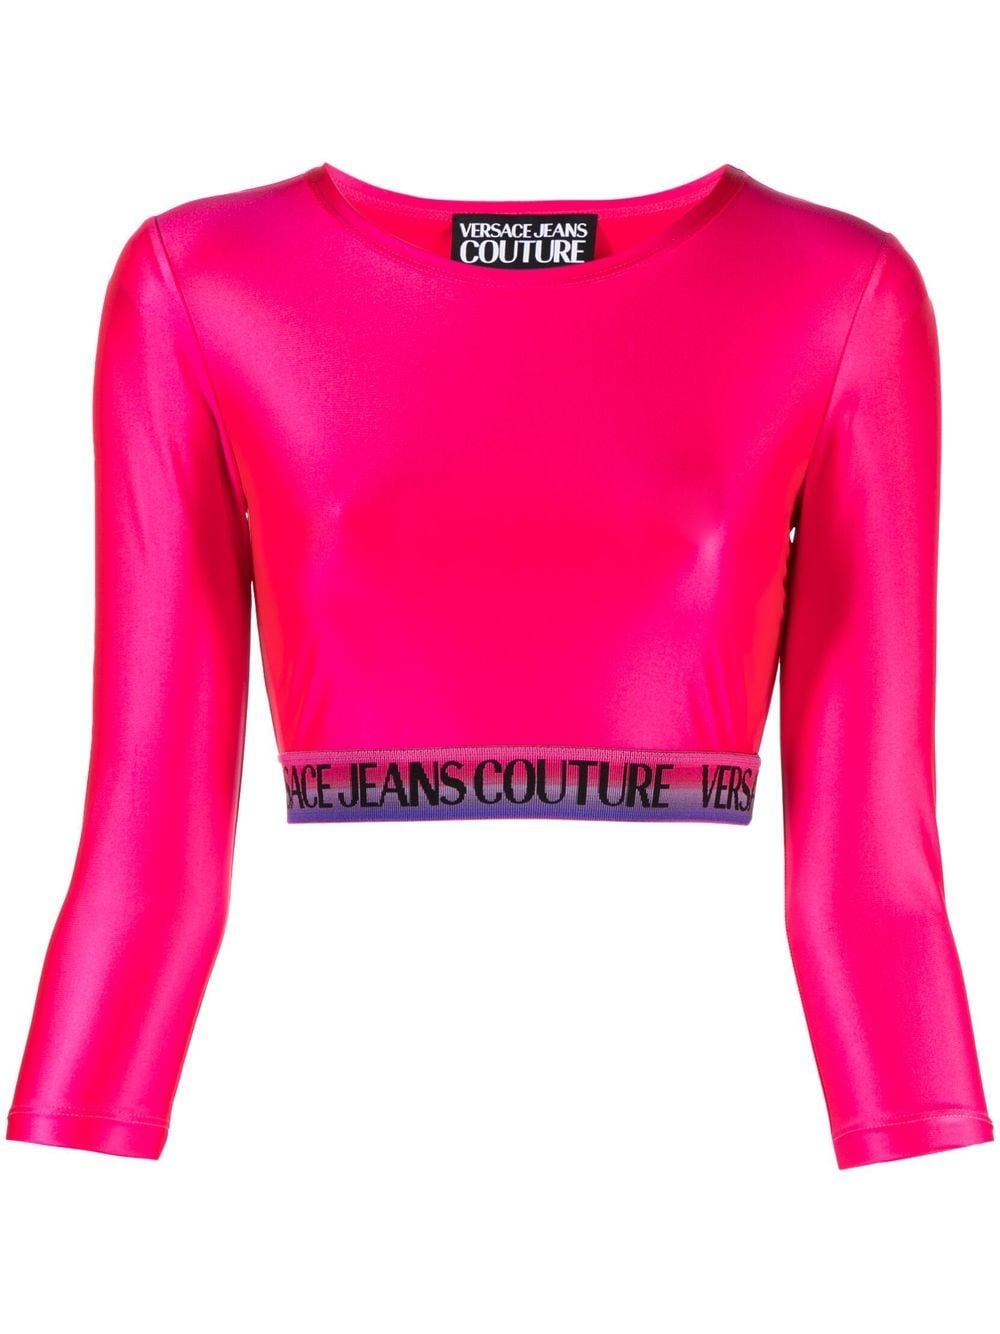 Versace Jeans Couture logo crop top - Pink von Versace Jeans Couture